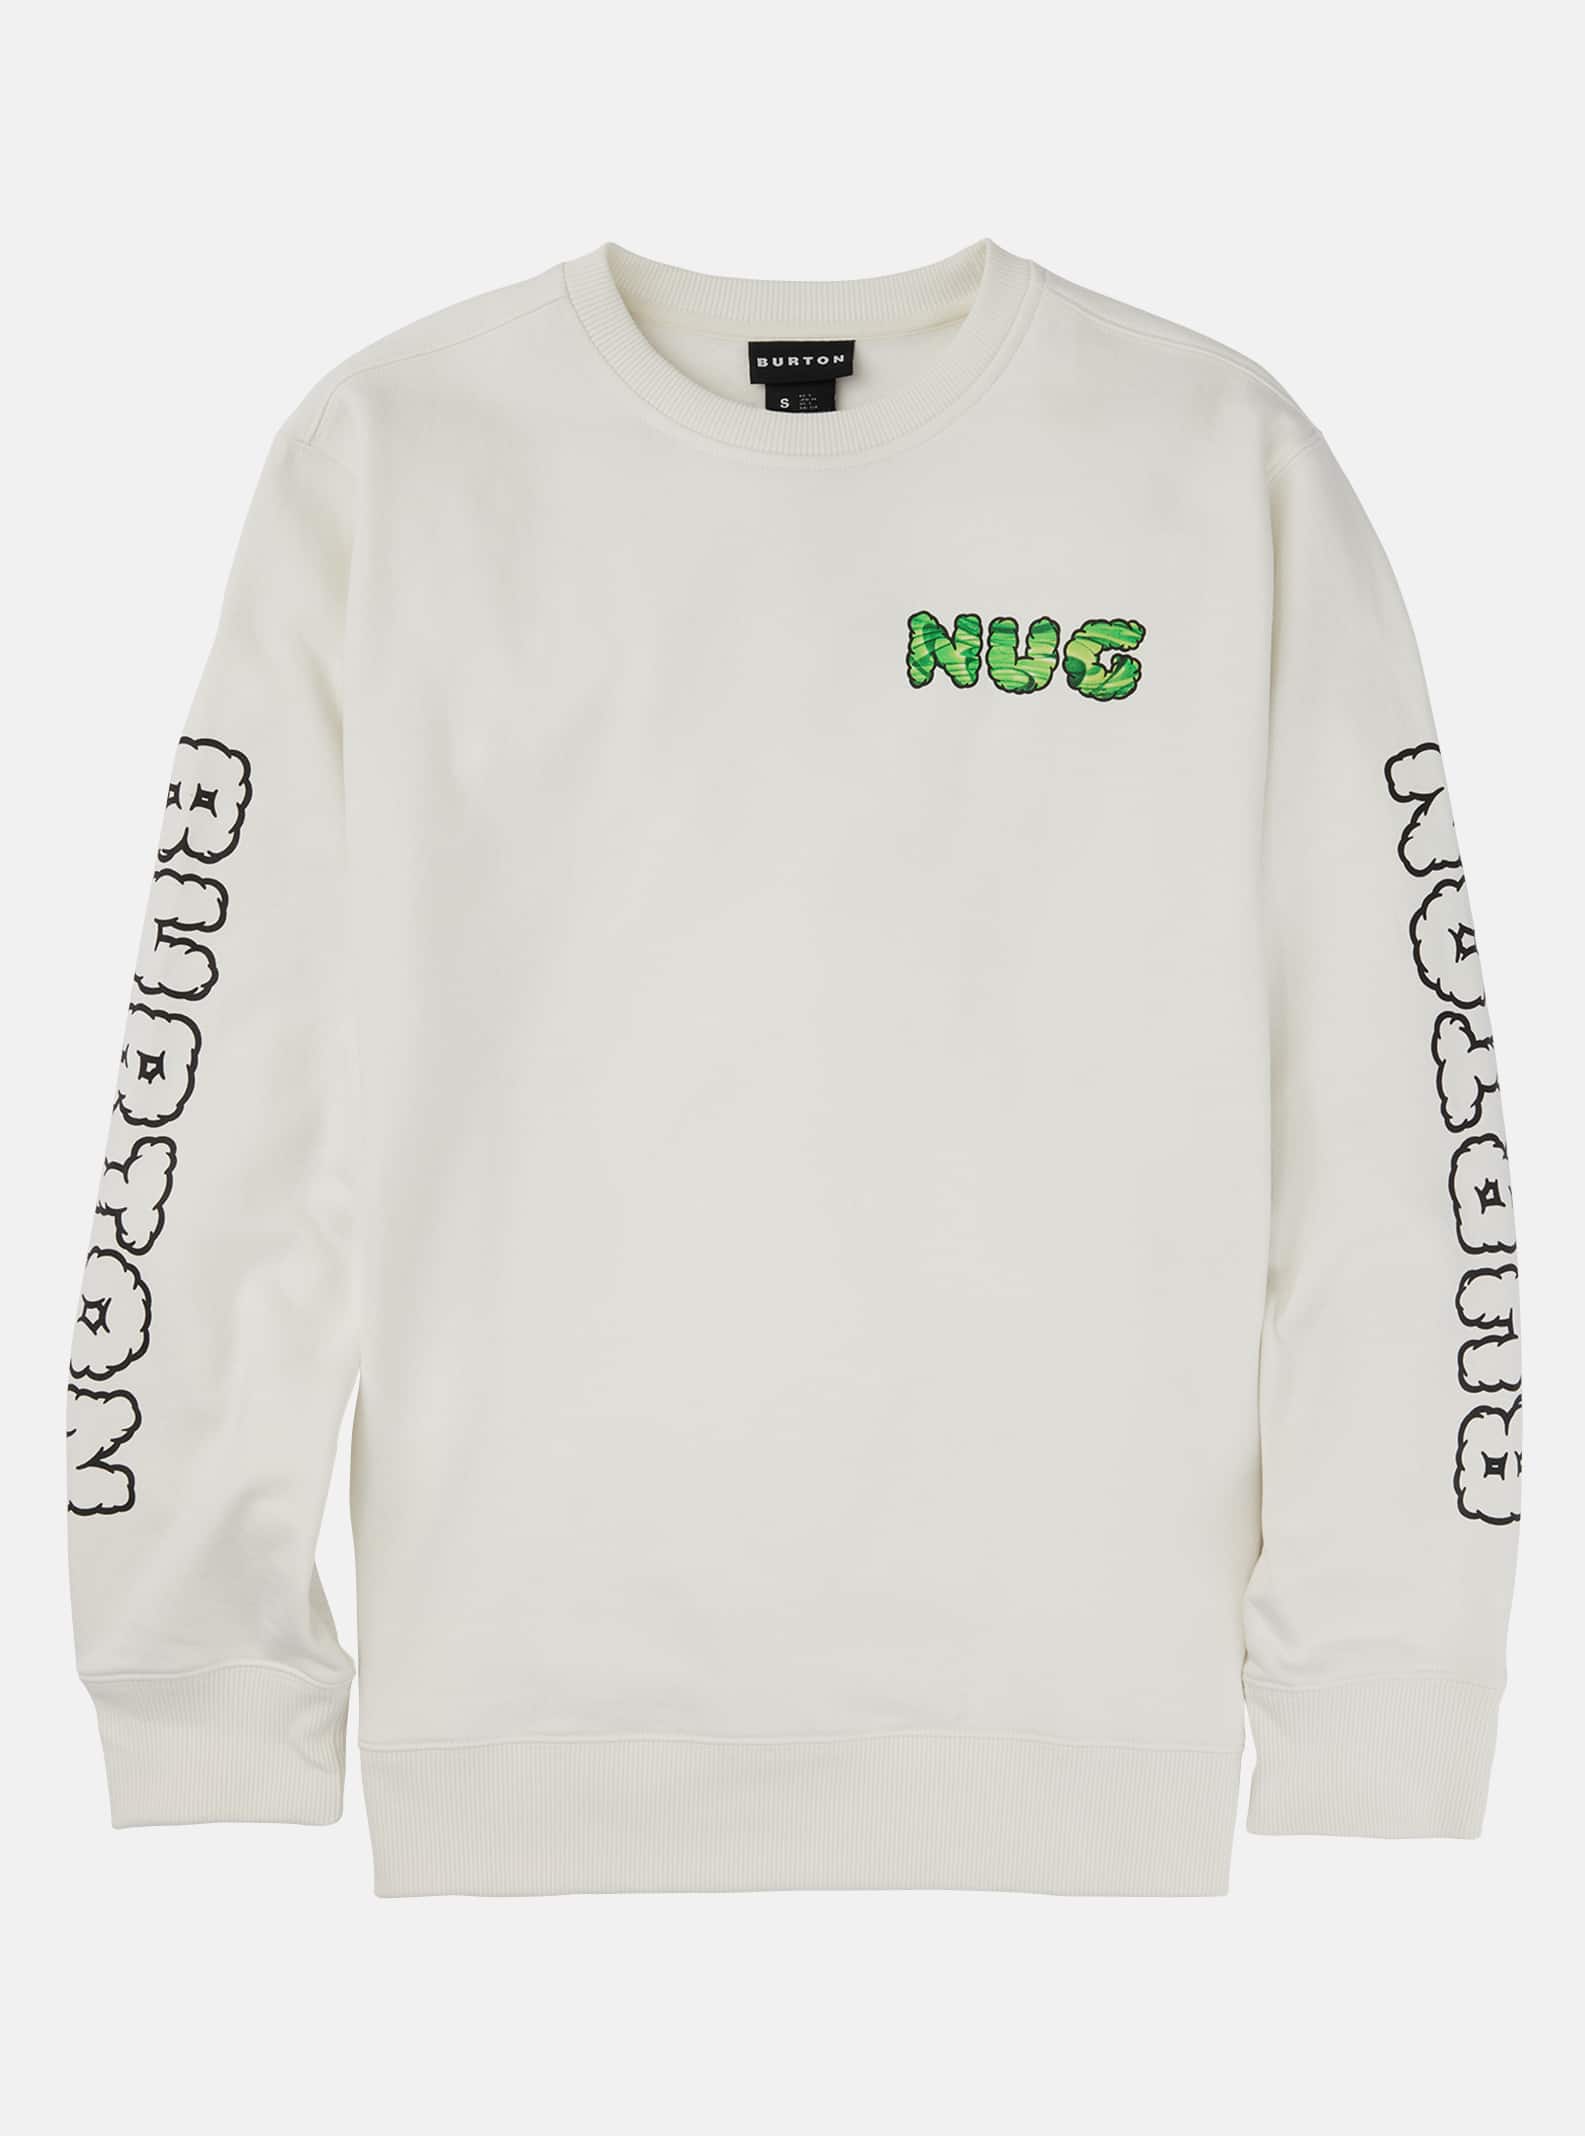 Burton 2011 Nug Crew sweatshirt, Stout White, XS